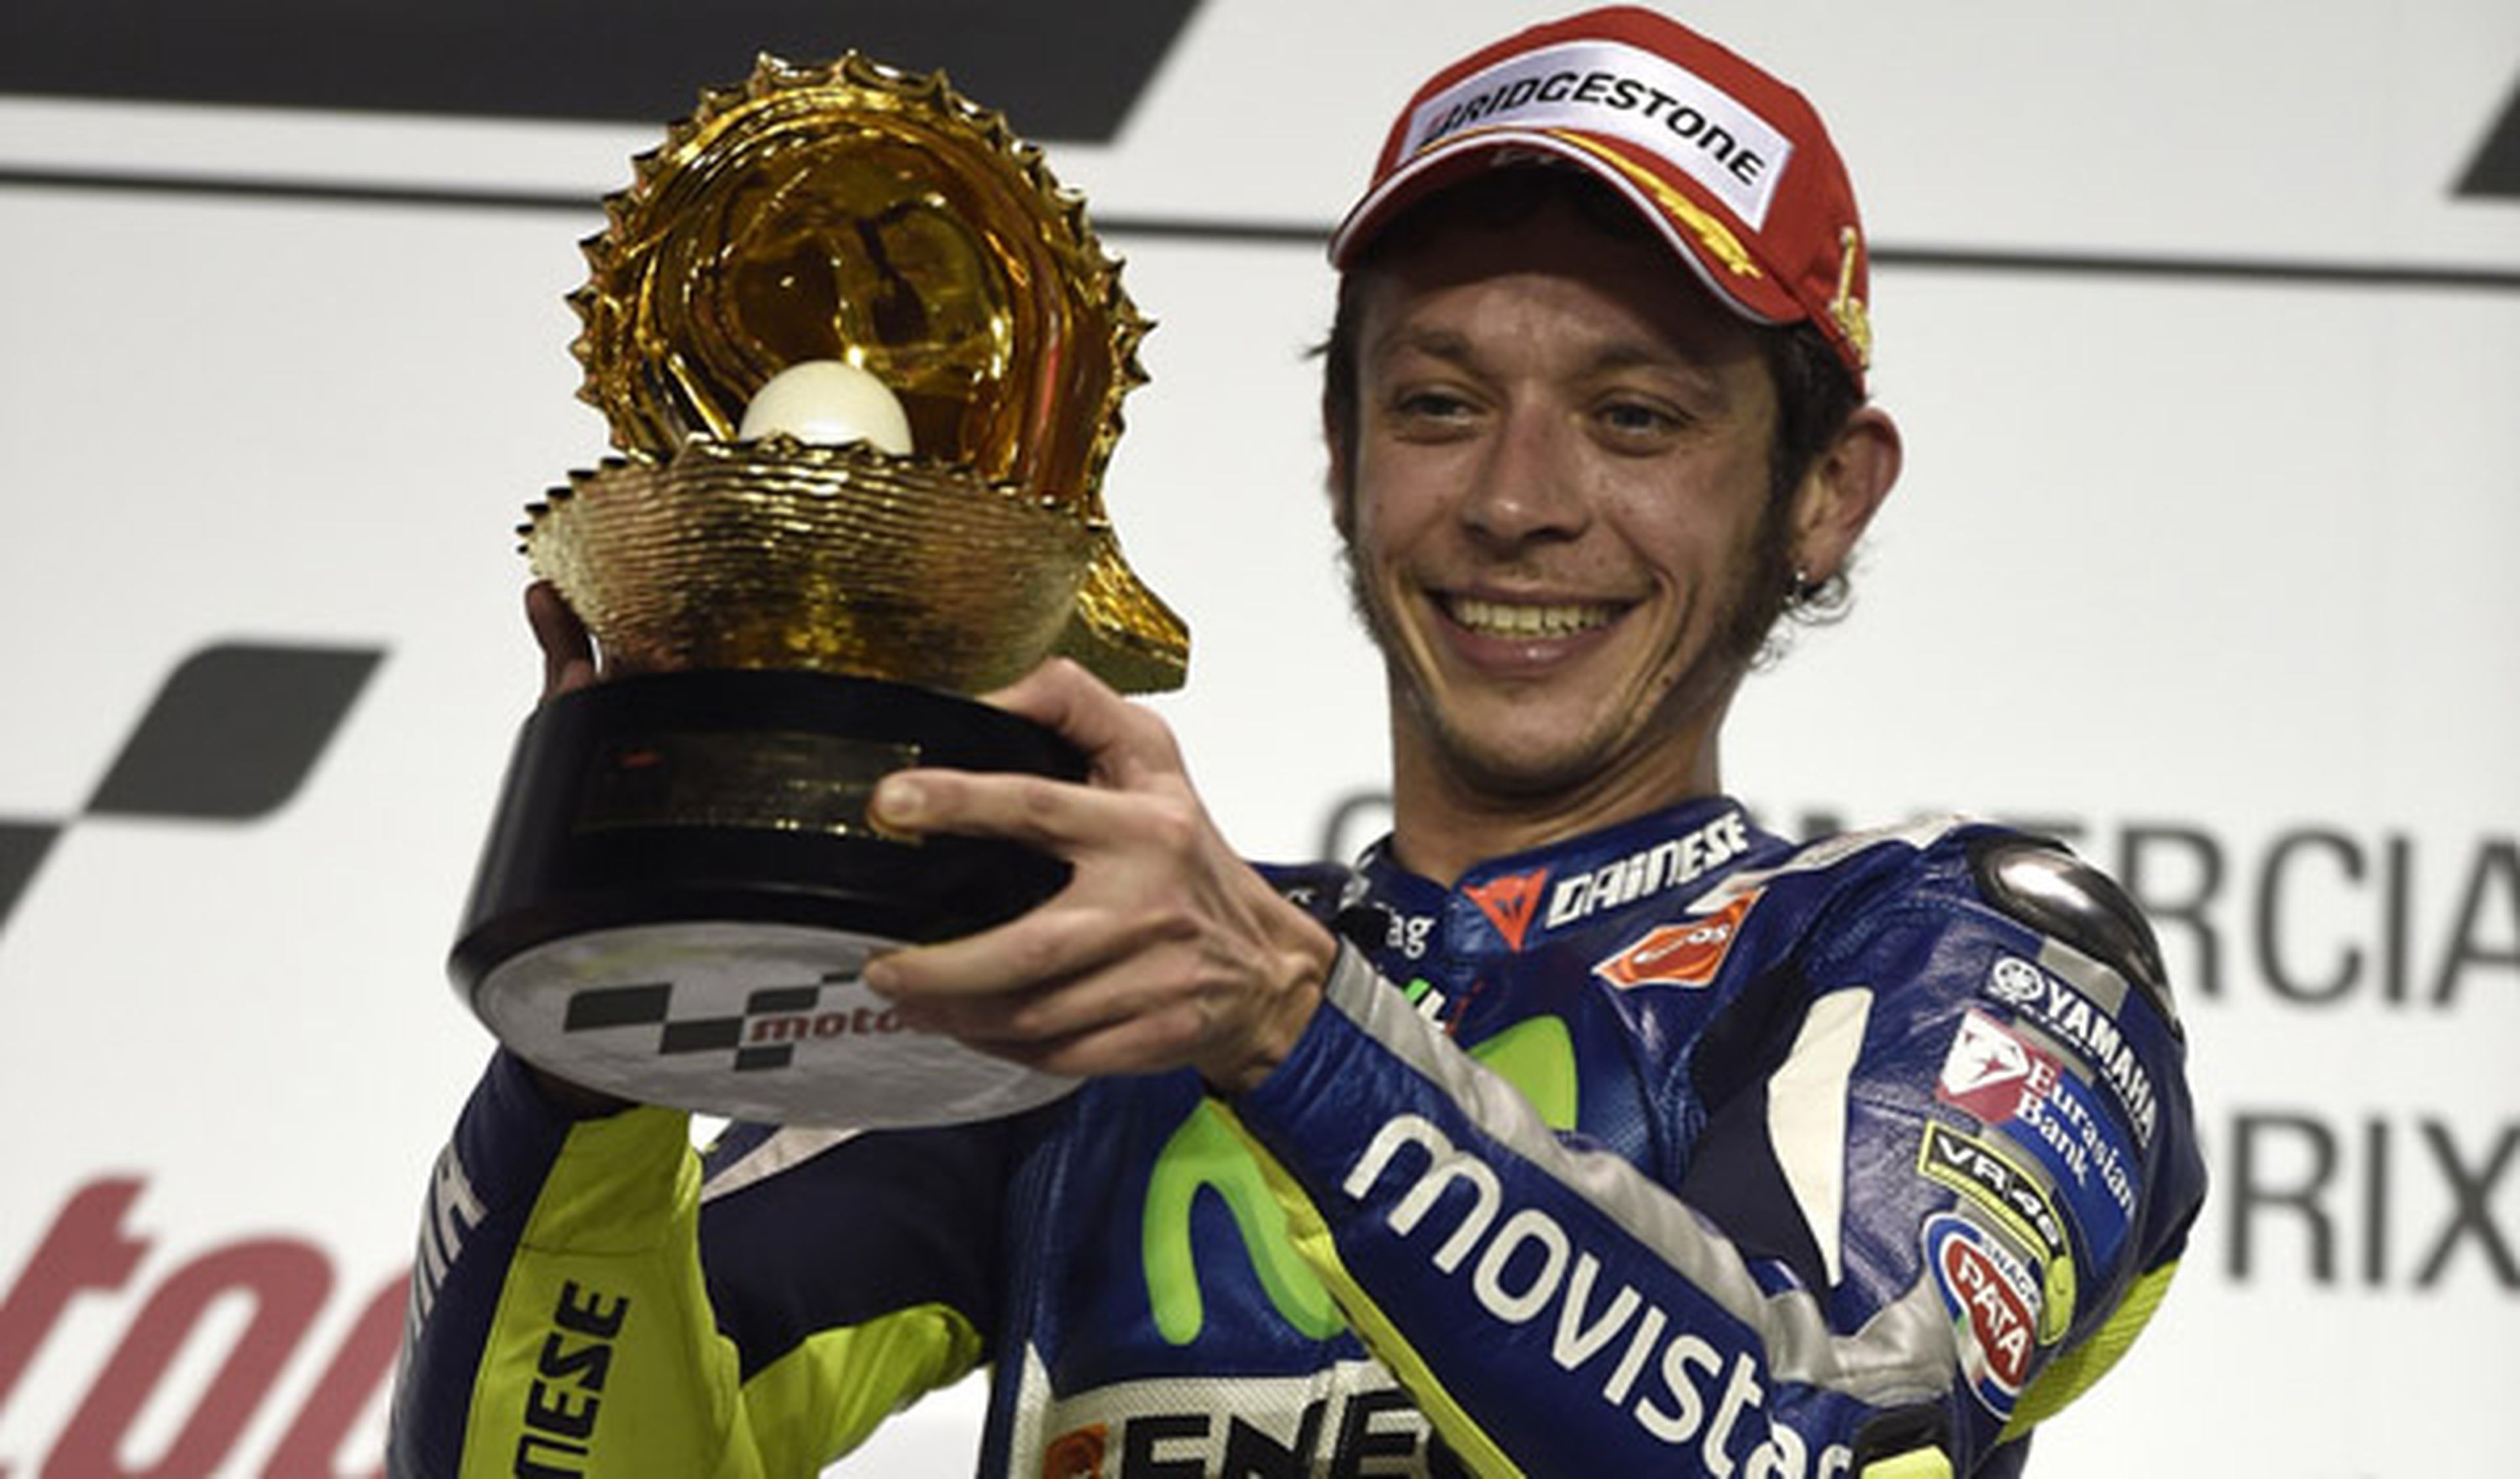 ¿Conseguirá Rossi batir el récord de victorias de Agostini?